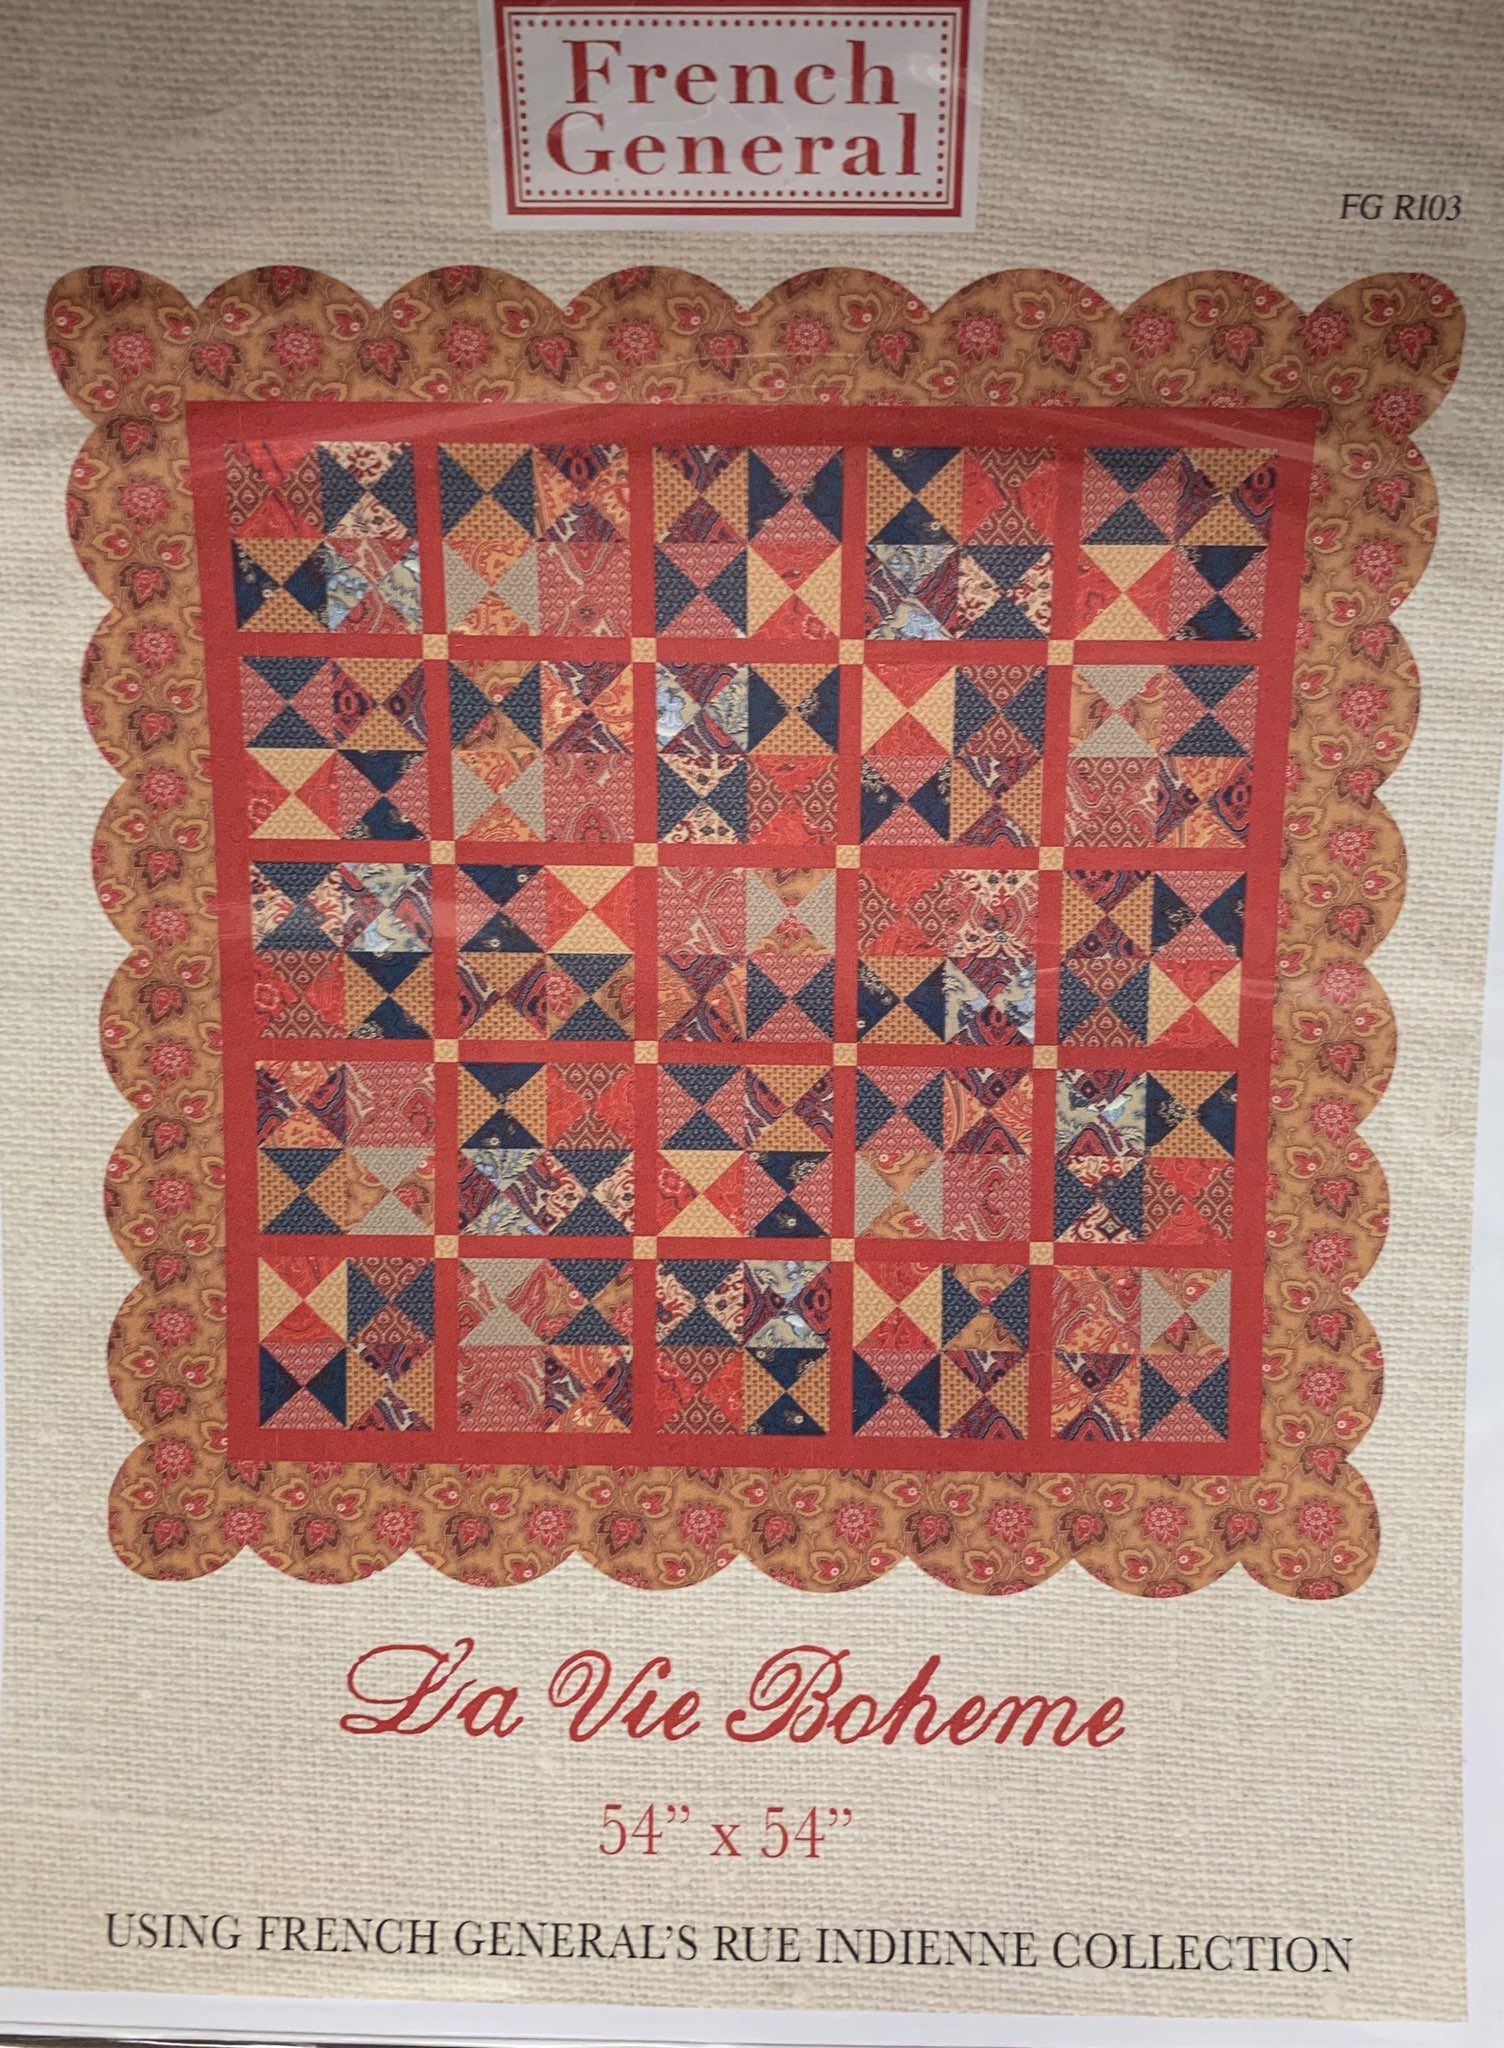 French General - La Vie Boheme - Pattern 54" x 54"